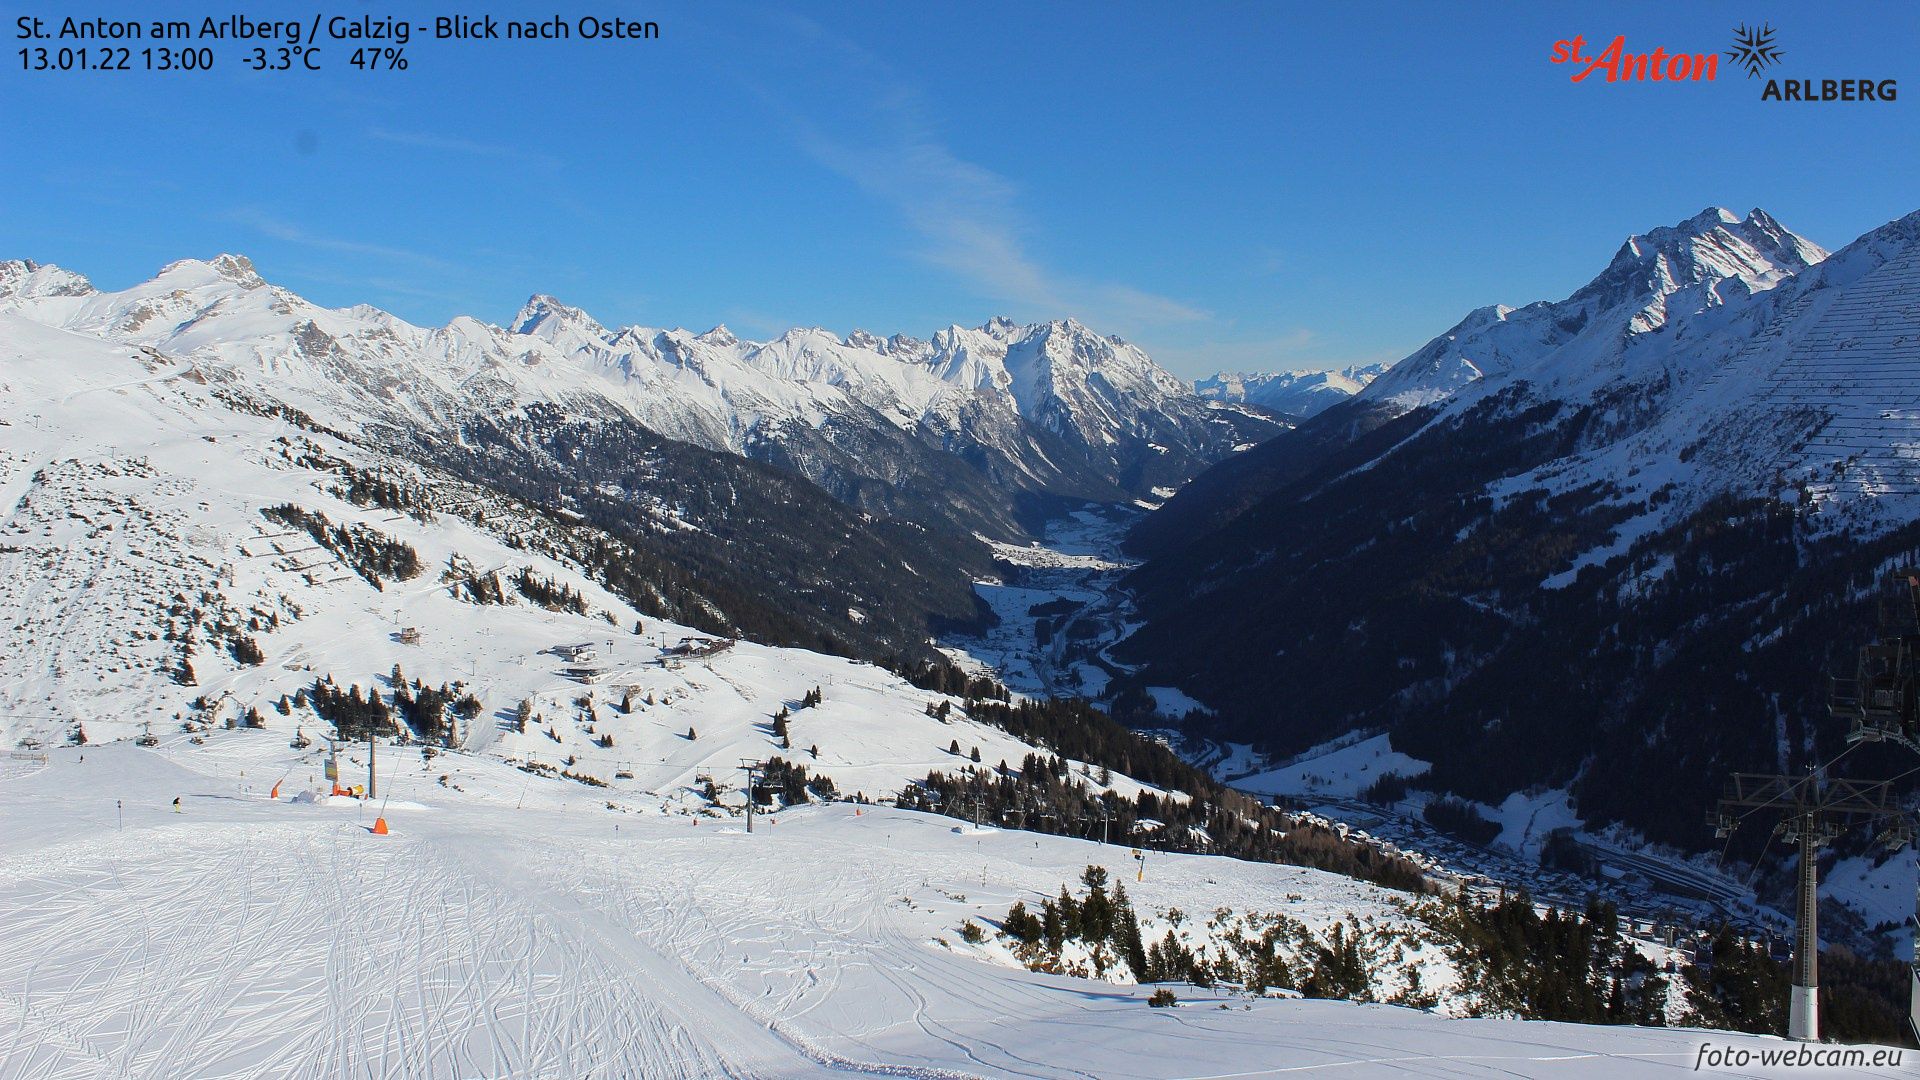 Zonnige en droge condities in de Alpen (foto-webcam.eu)